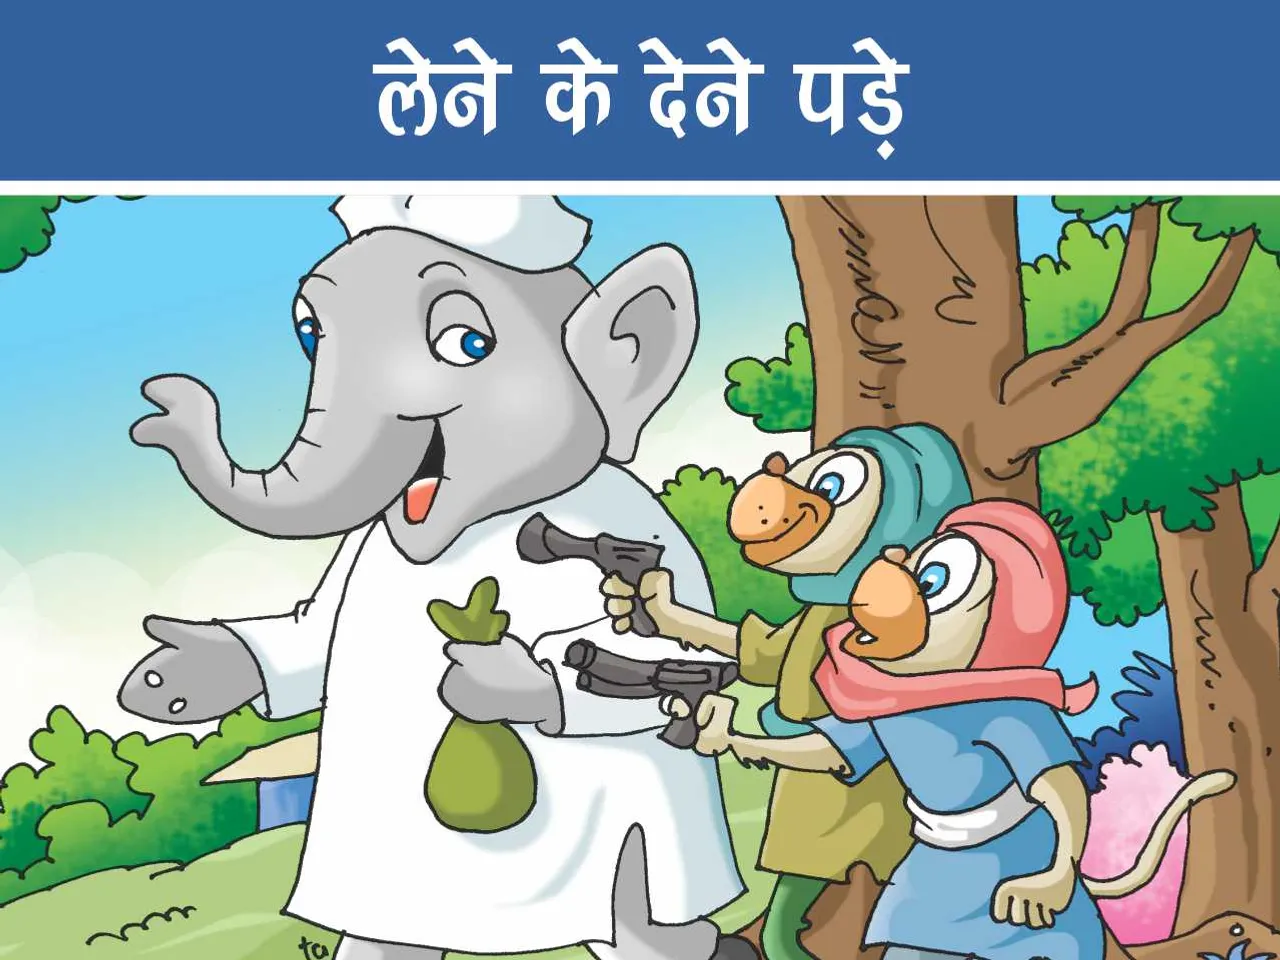 Elephant and monkey cartoon image